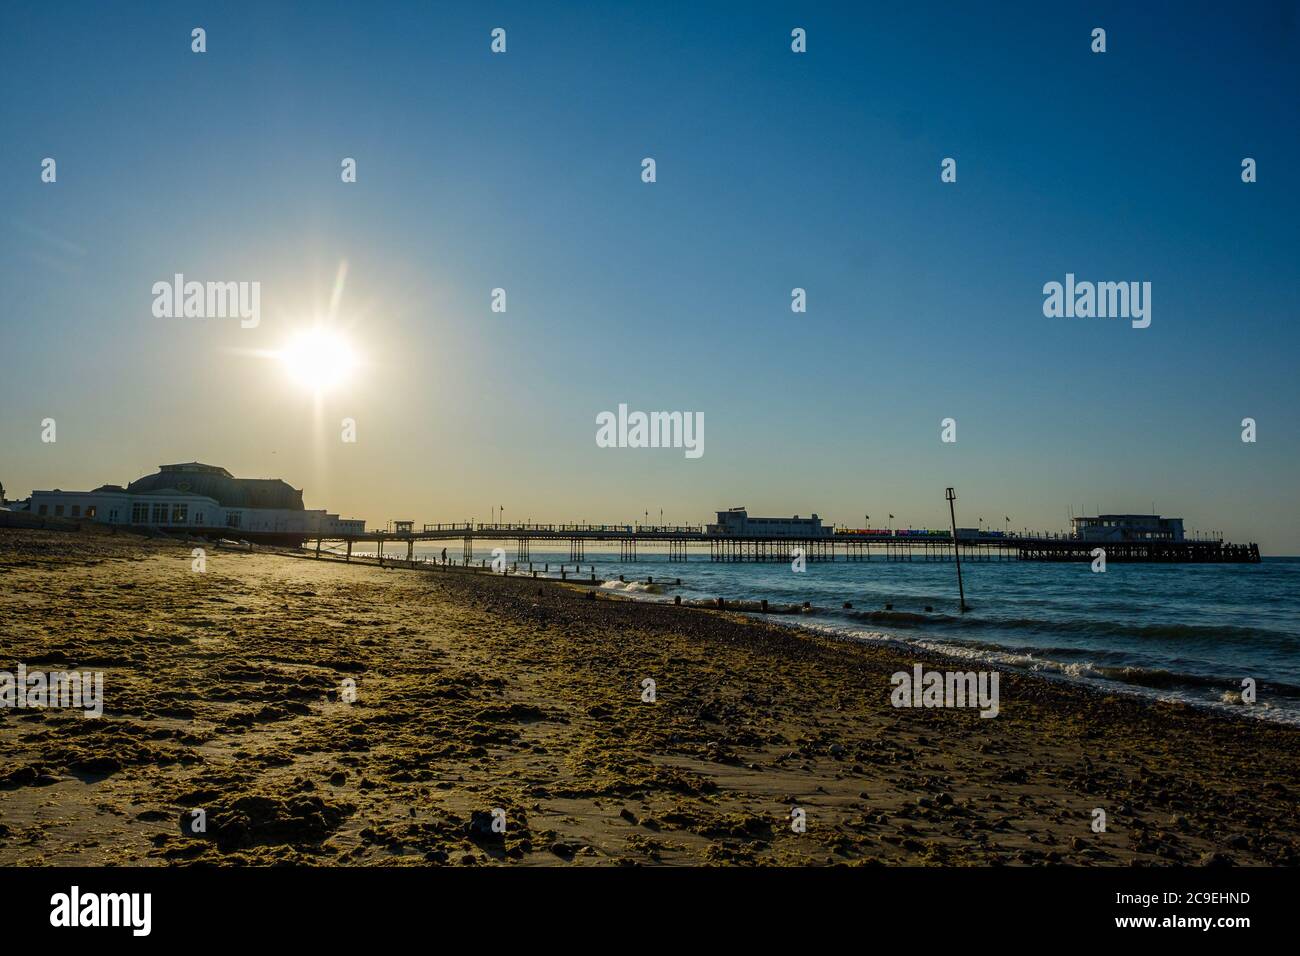 Worthing Beach, Worthing, Reino Unido. 31 de julio de 2020. El sol se eleva sobre el muelle y la rueda de observación en lo que se prevé que será uno de los días más calurosos del año. Imagen de crédito: Julie Edwards/Alamy Live News Foto de stock